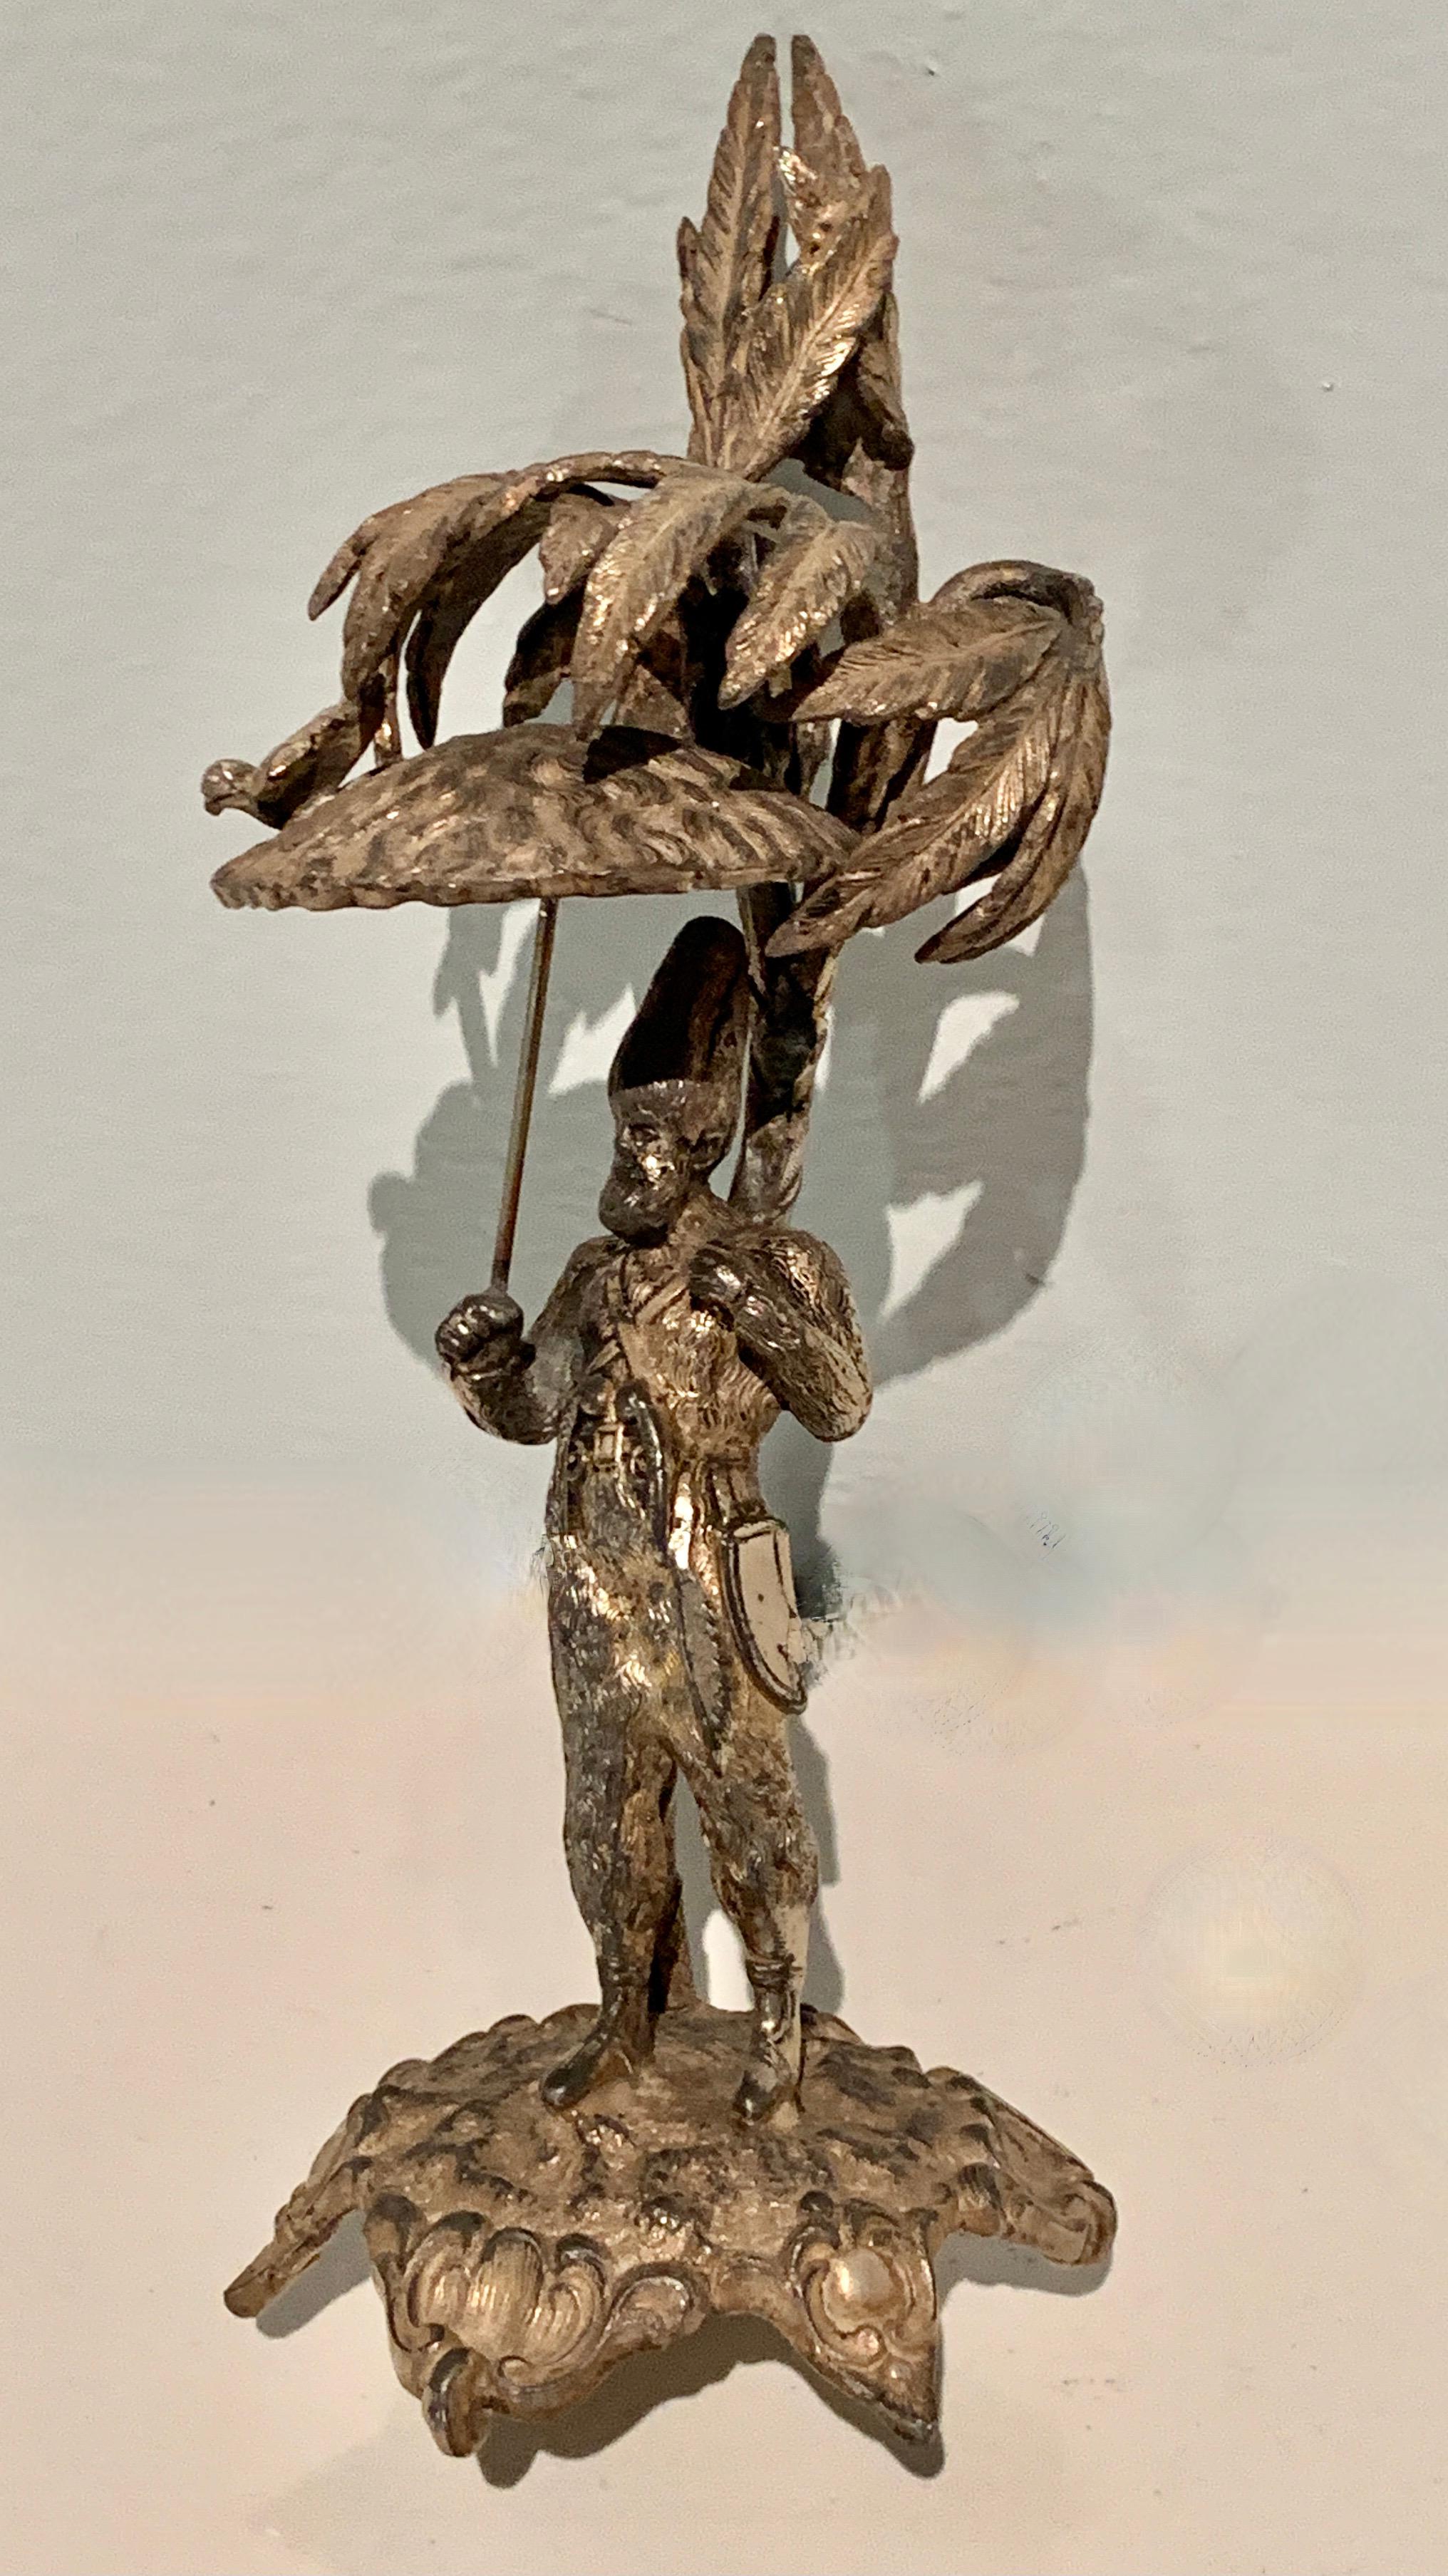 bird carrying person sculpture